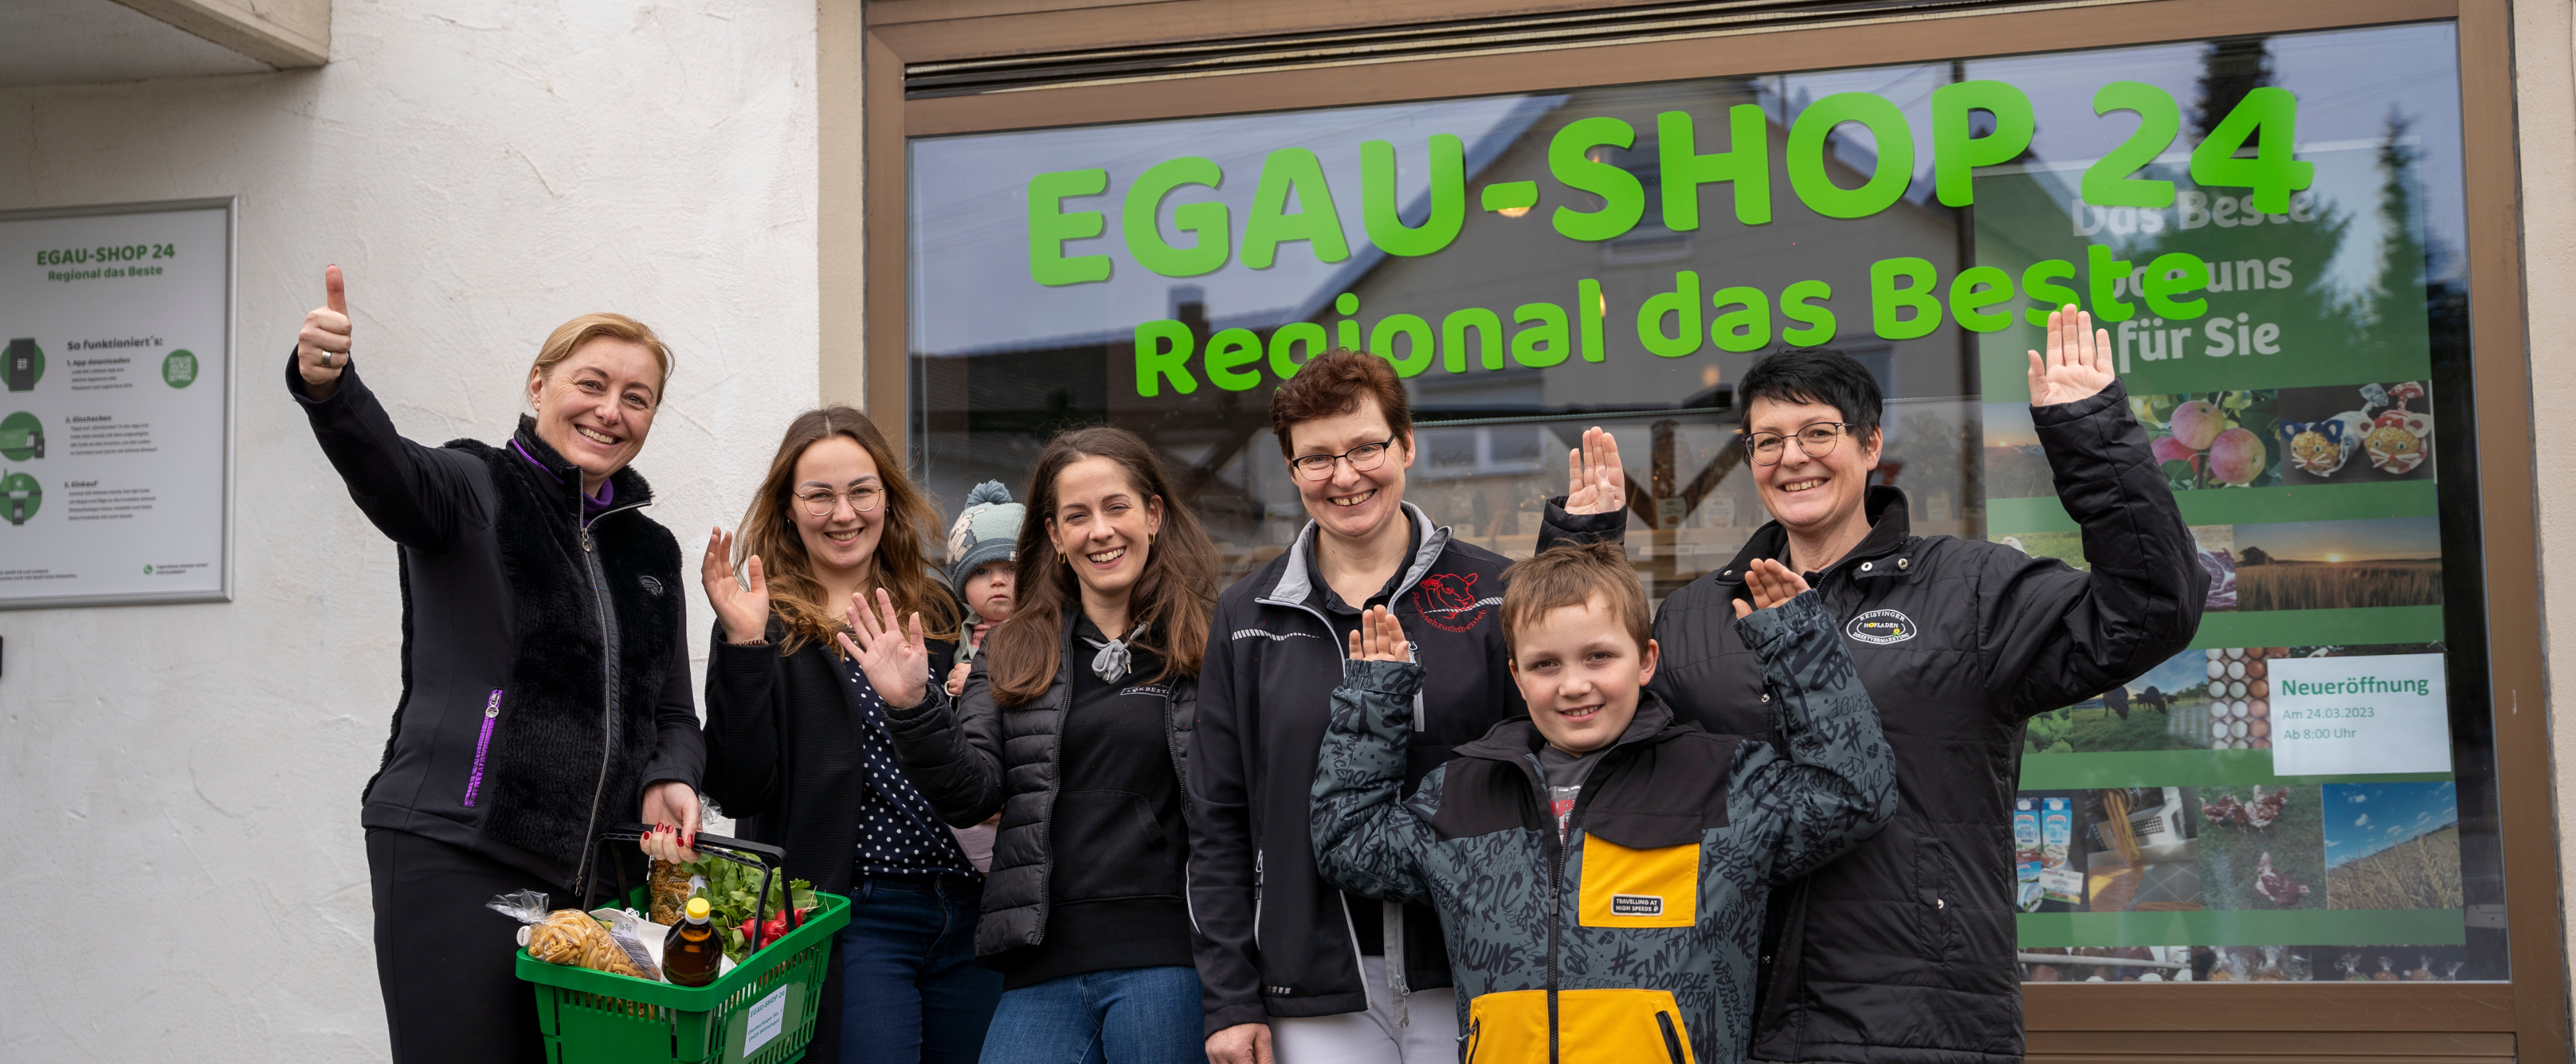 Gruppenfoto bei der Eröffnung des digitalen „Egau Shop 24“ in Wittislingen